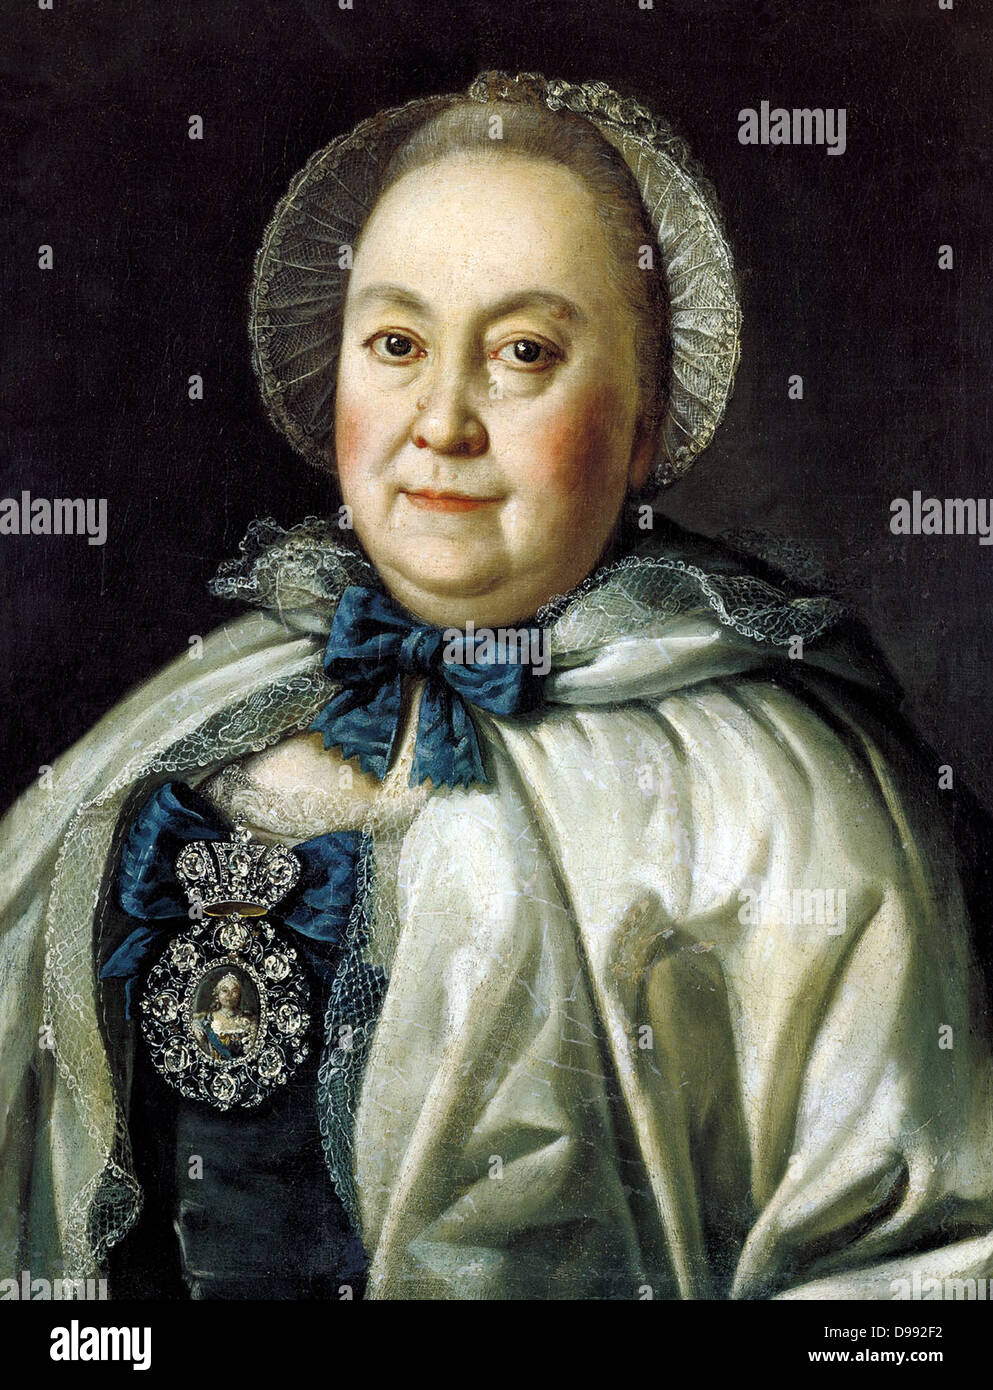 Portrait de Mariya Andreevna Rumyanceva', 1764. Huile sur toile. Alexei Petrovitch Antropov (1716-1795) peintre russe. Tête-et-épaules femelle diamant gemme frontale joyau Cap Cape bonnet rouge ruban Banque D'Images